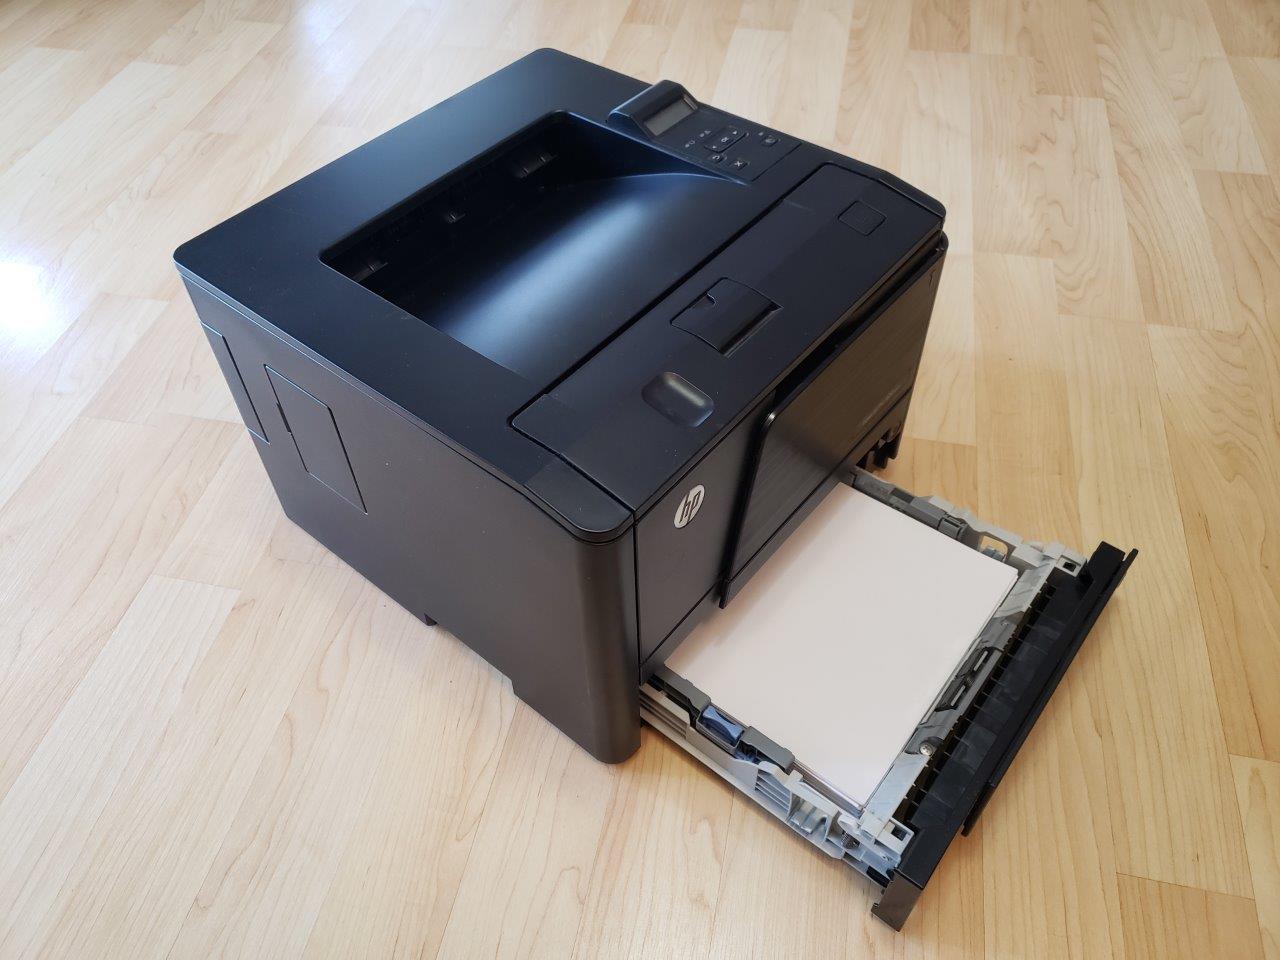 HP LaserJet Pro 400 Printer M401n (CZ195A)